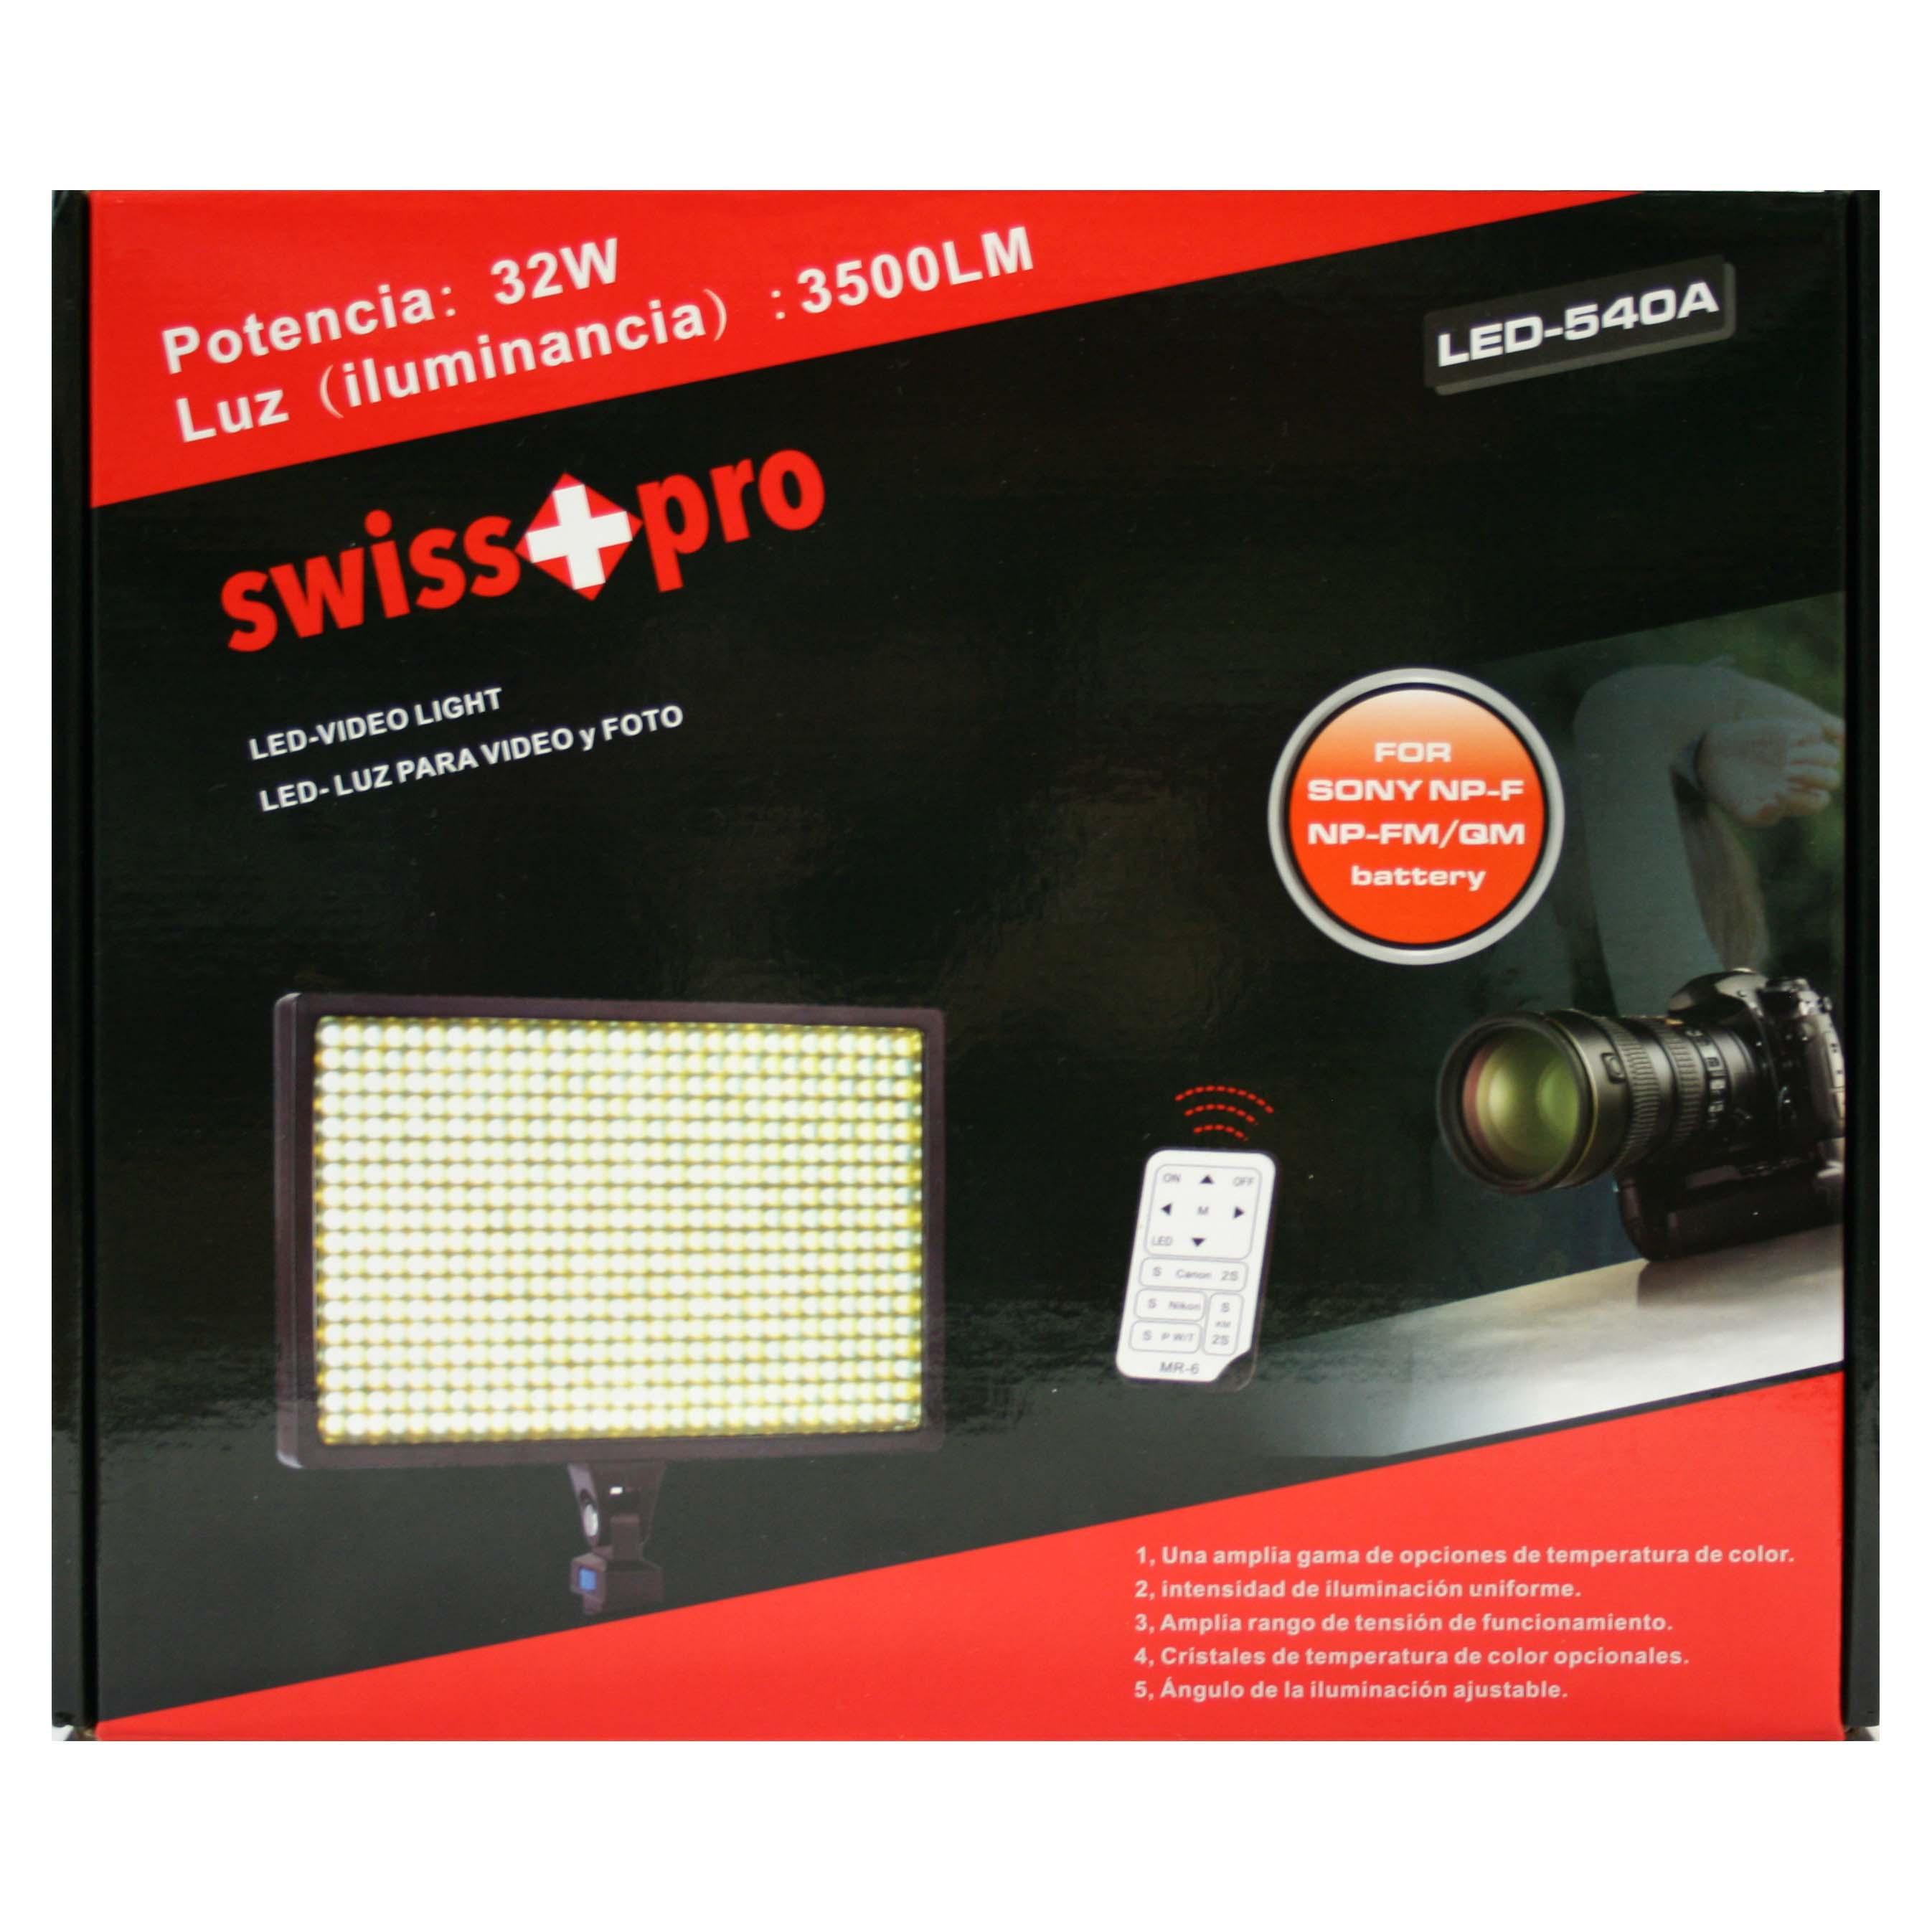 ANTORCHA LED SWISS-PRO IS-L540A 540 LEDS